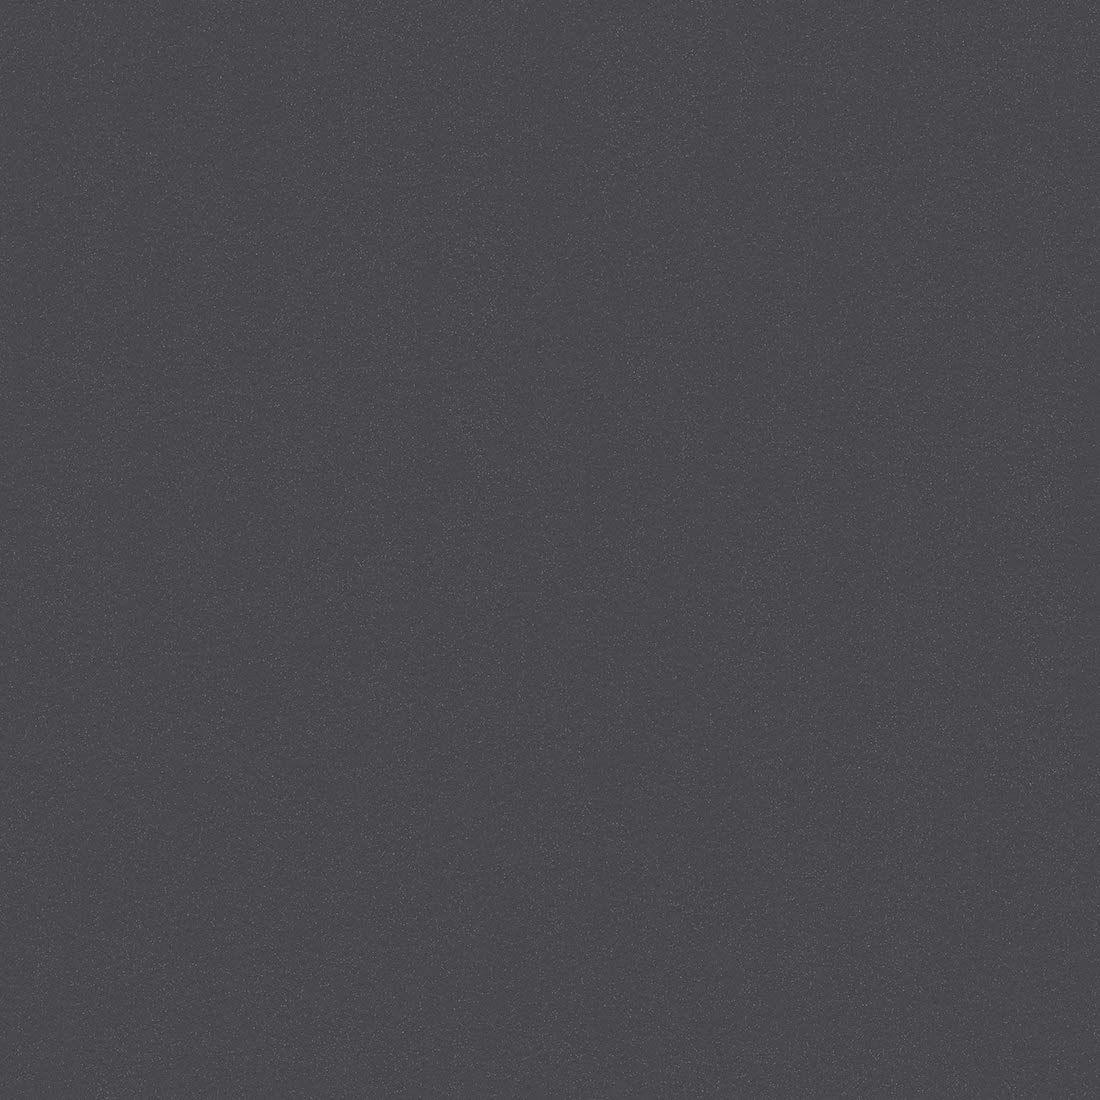 Dark Grey Aesthetic Wallpapers - Top Những Hình Ảnh Đẹp